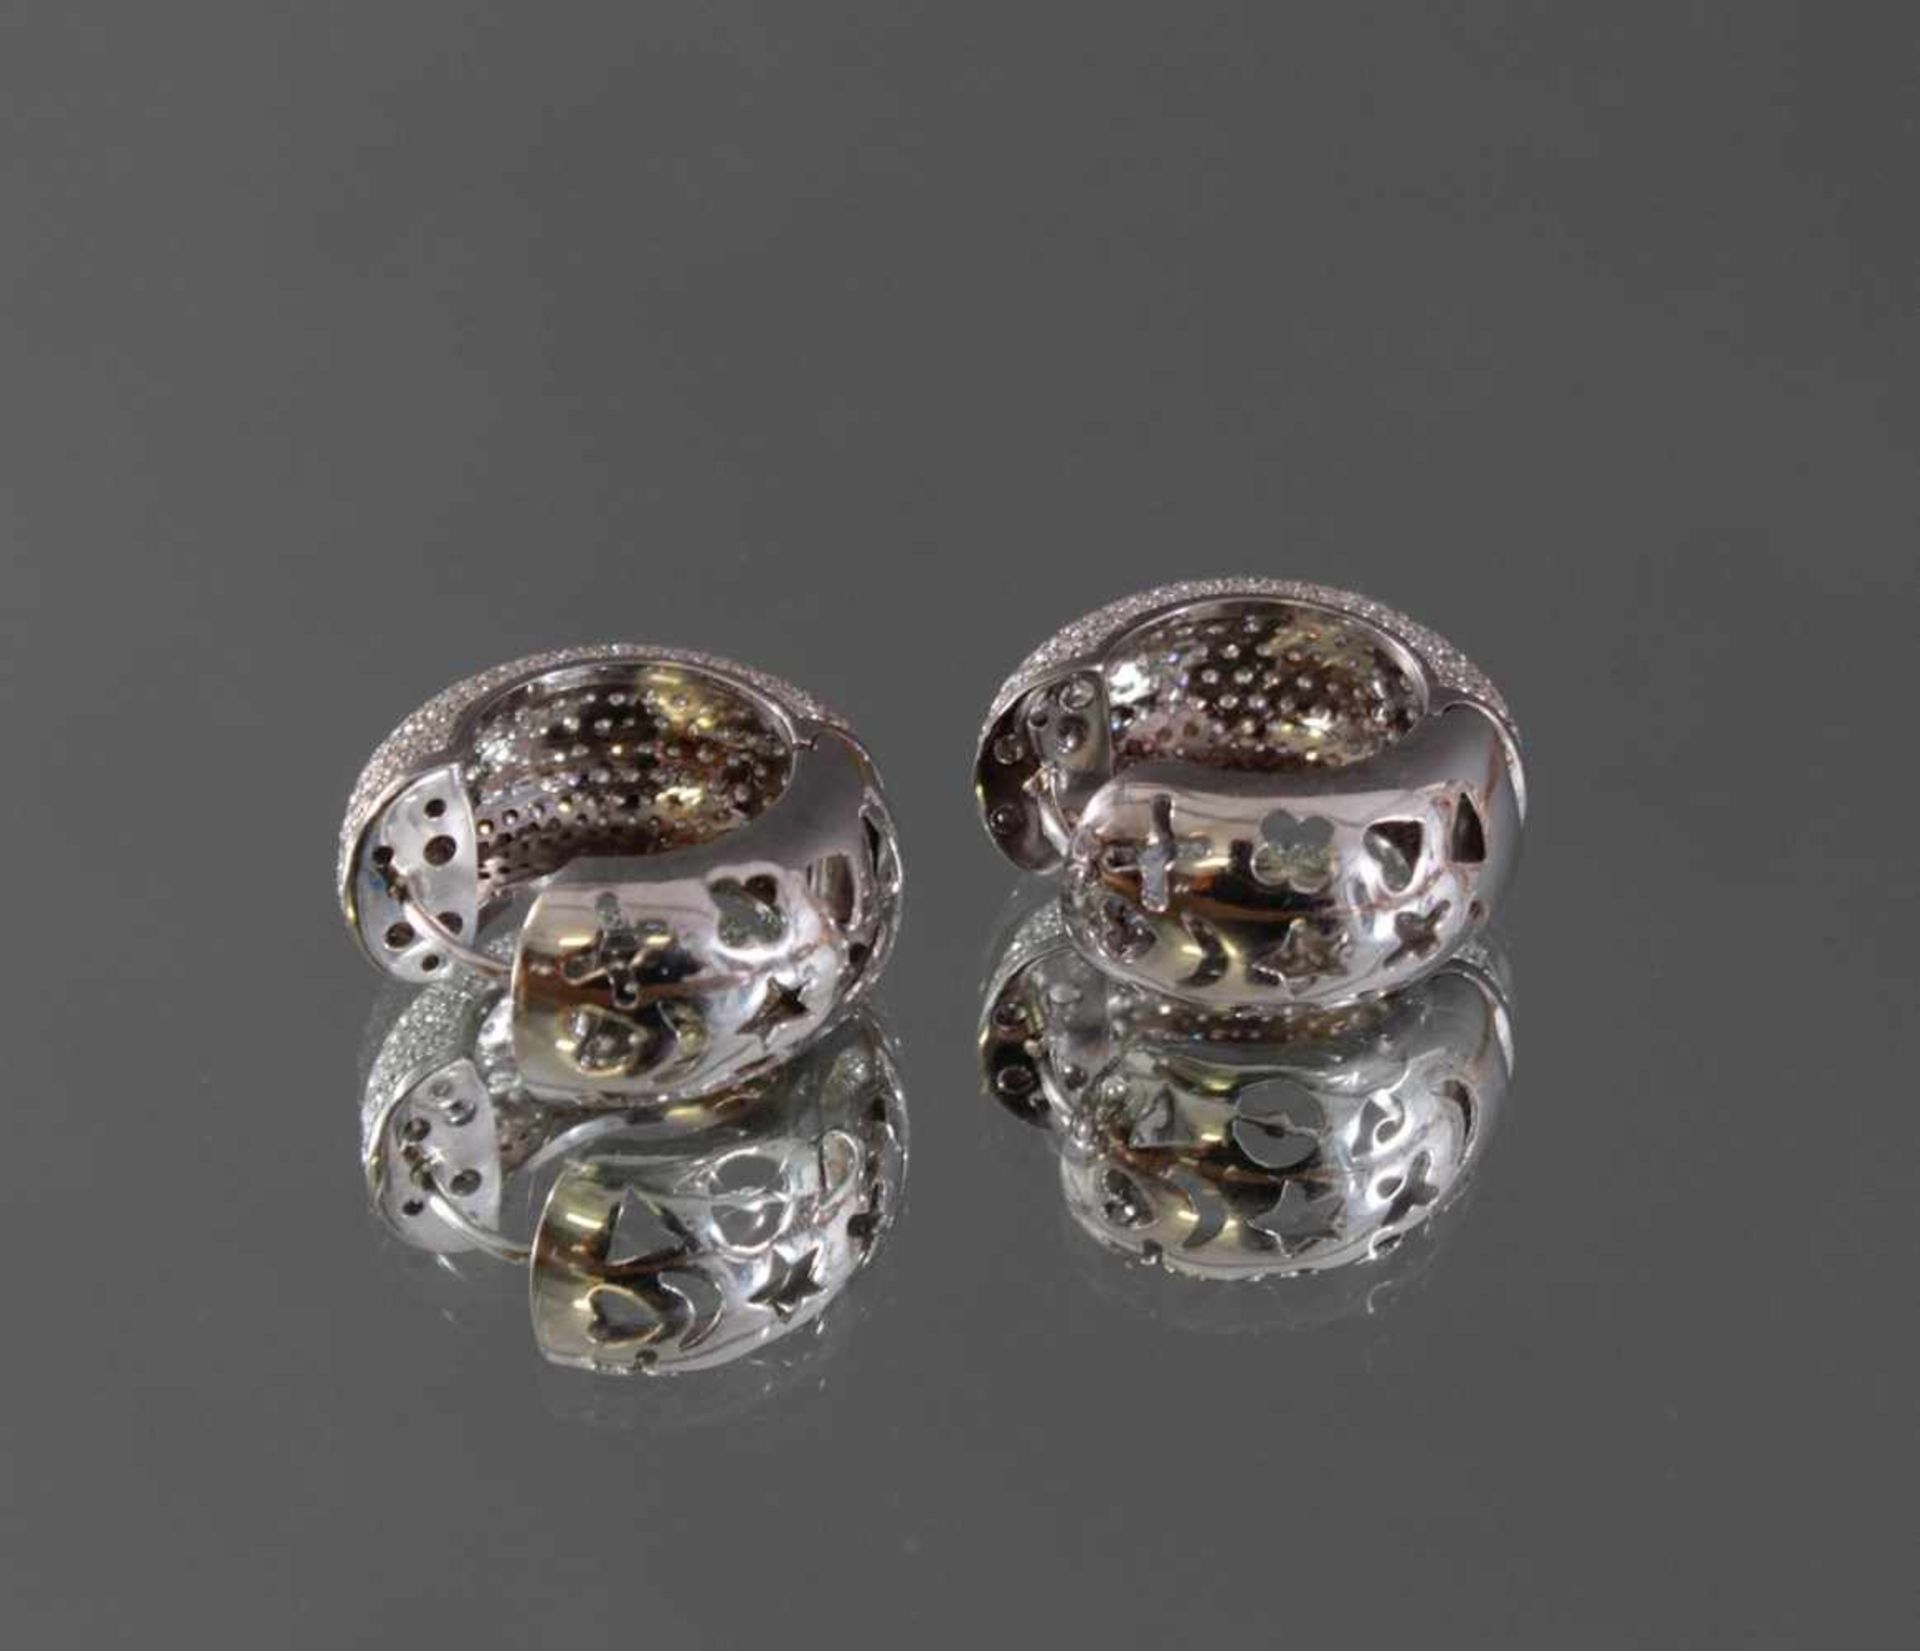 Ohrringe mit Diamanten 750/000 WeißgoldBesetzt mit weit über 600 Diamanten von jeweils ca. 0,005 kt. - Bild 3 aus 3